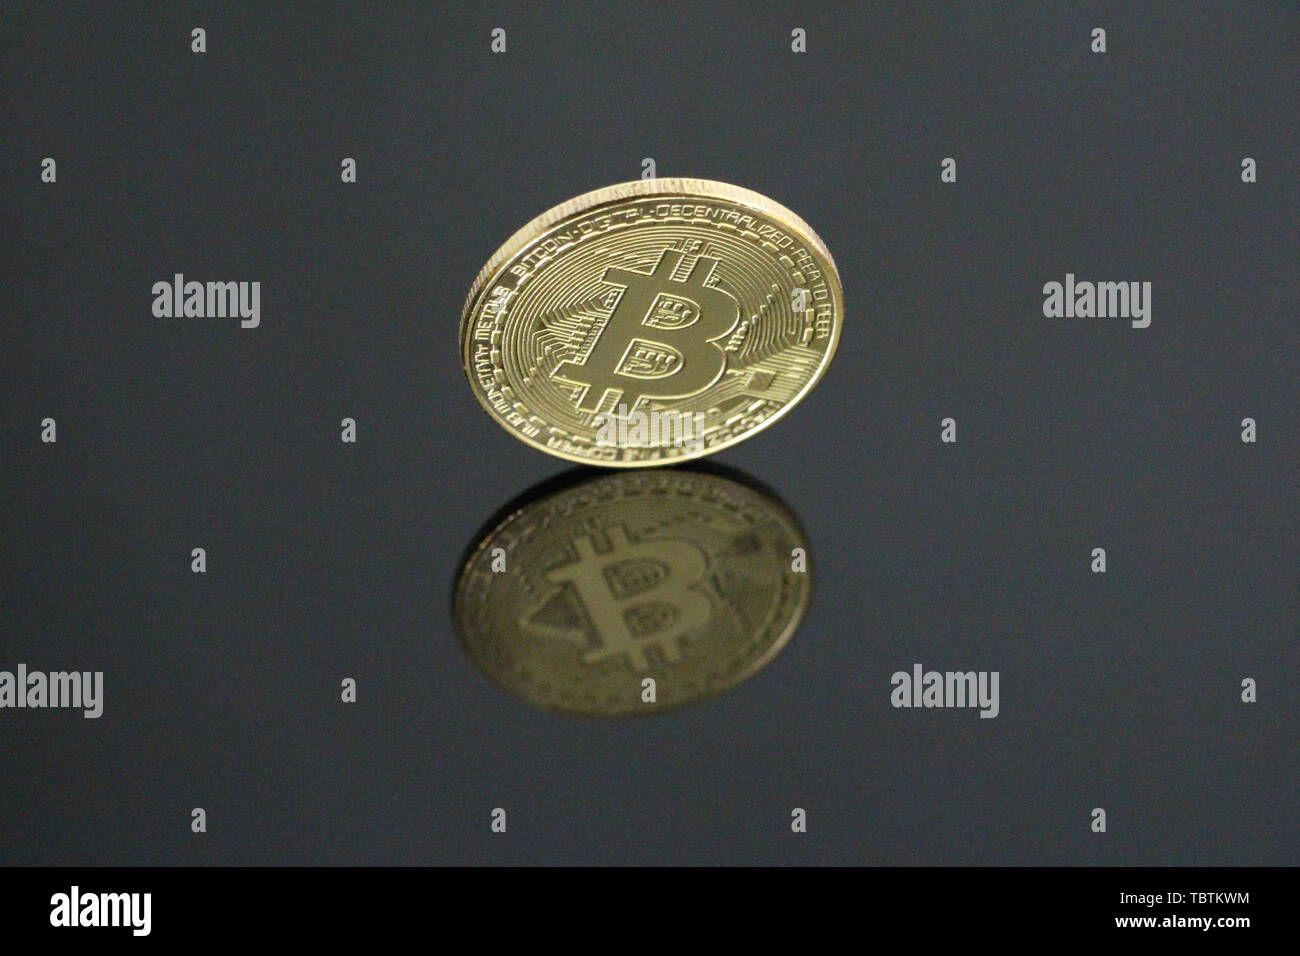 Une pièce d'or sur fond noir bitcoin. Bitcoin est sur le côté. On peut voir son reflet. Concept Cryptocurrency bitcoin gold. Aucun peuple, vide Banque D'Images